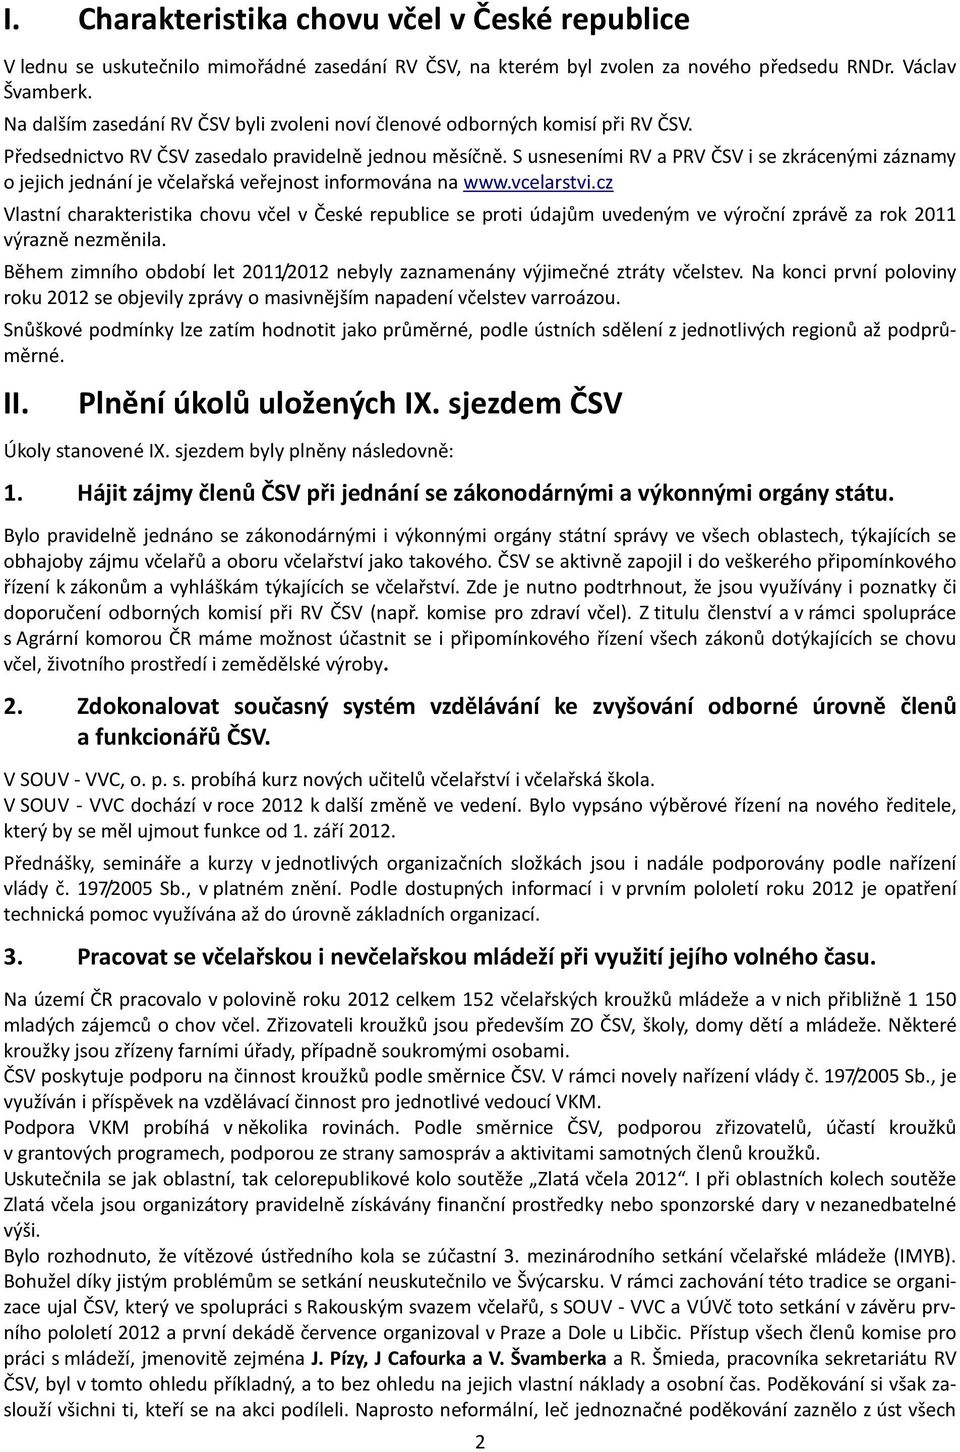 S usneseními RV a PRV ČSV i se zkrácenými záznamy o jejich jednání je včelařská veřejnost informována na www.vcelarstvi.